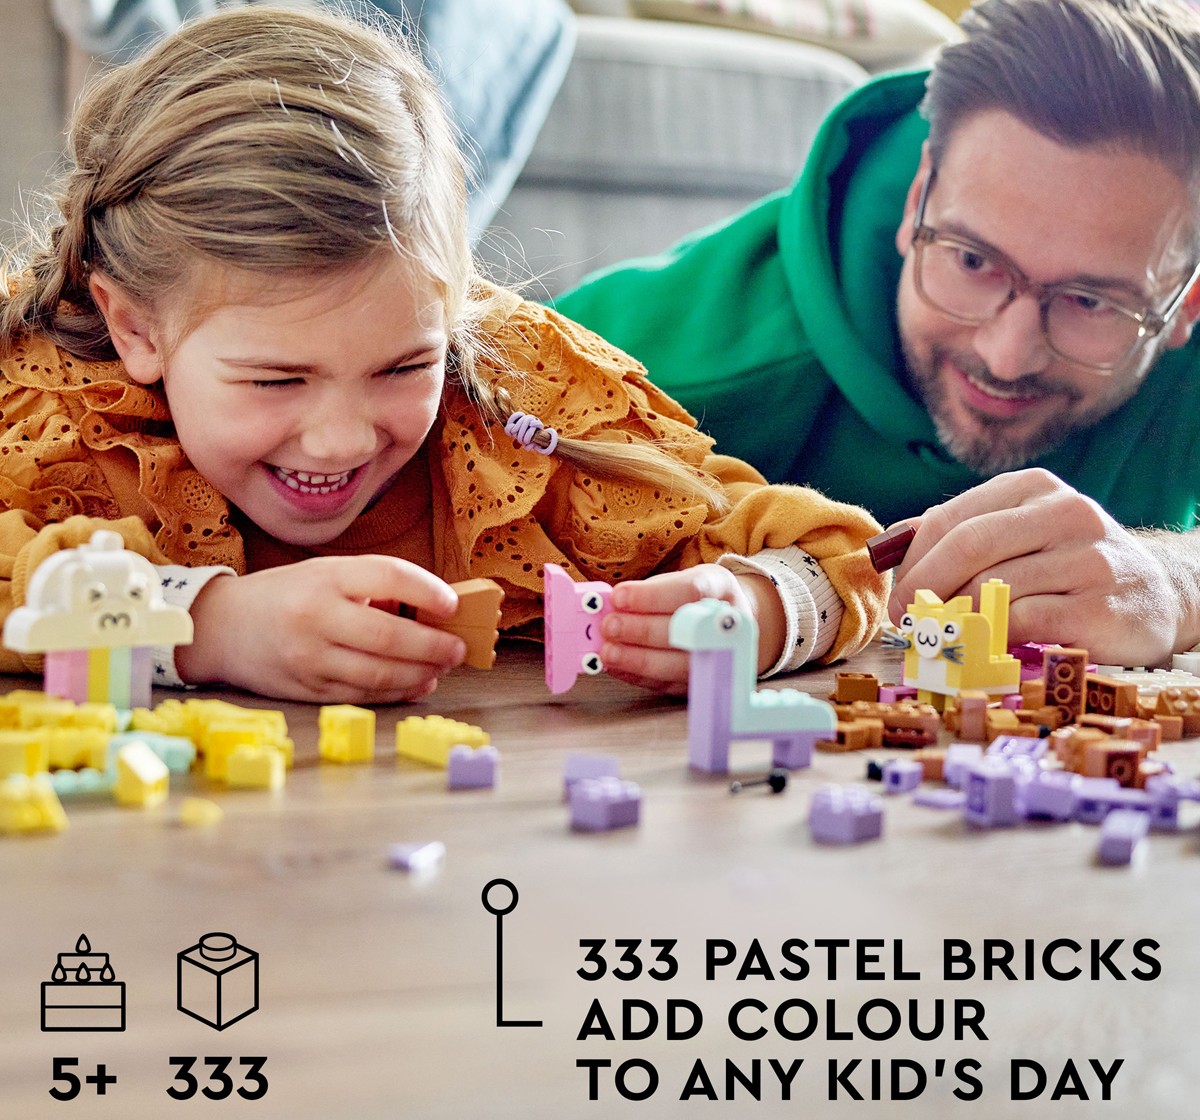 LEGO Classic Creative Pastel Fun 11028 Building Toy Set 333 Pieces Multicolour 5Y+